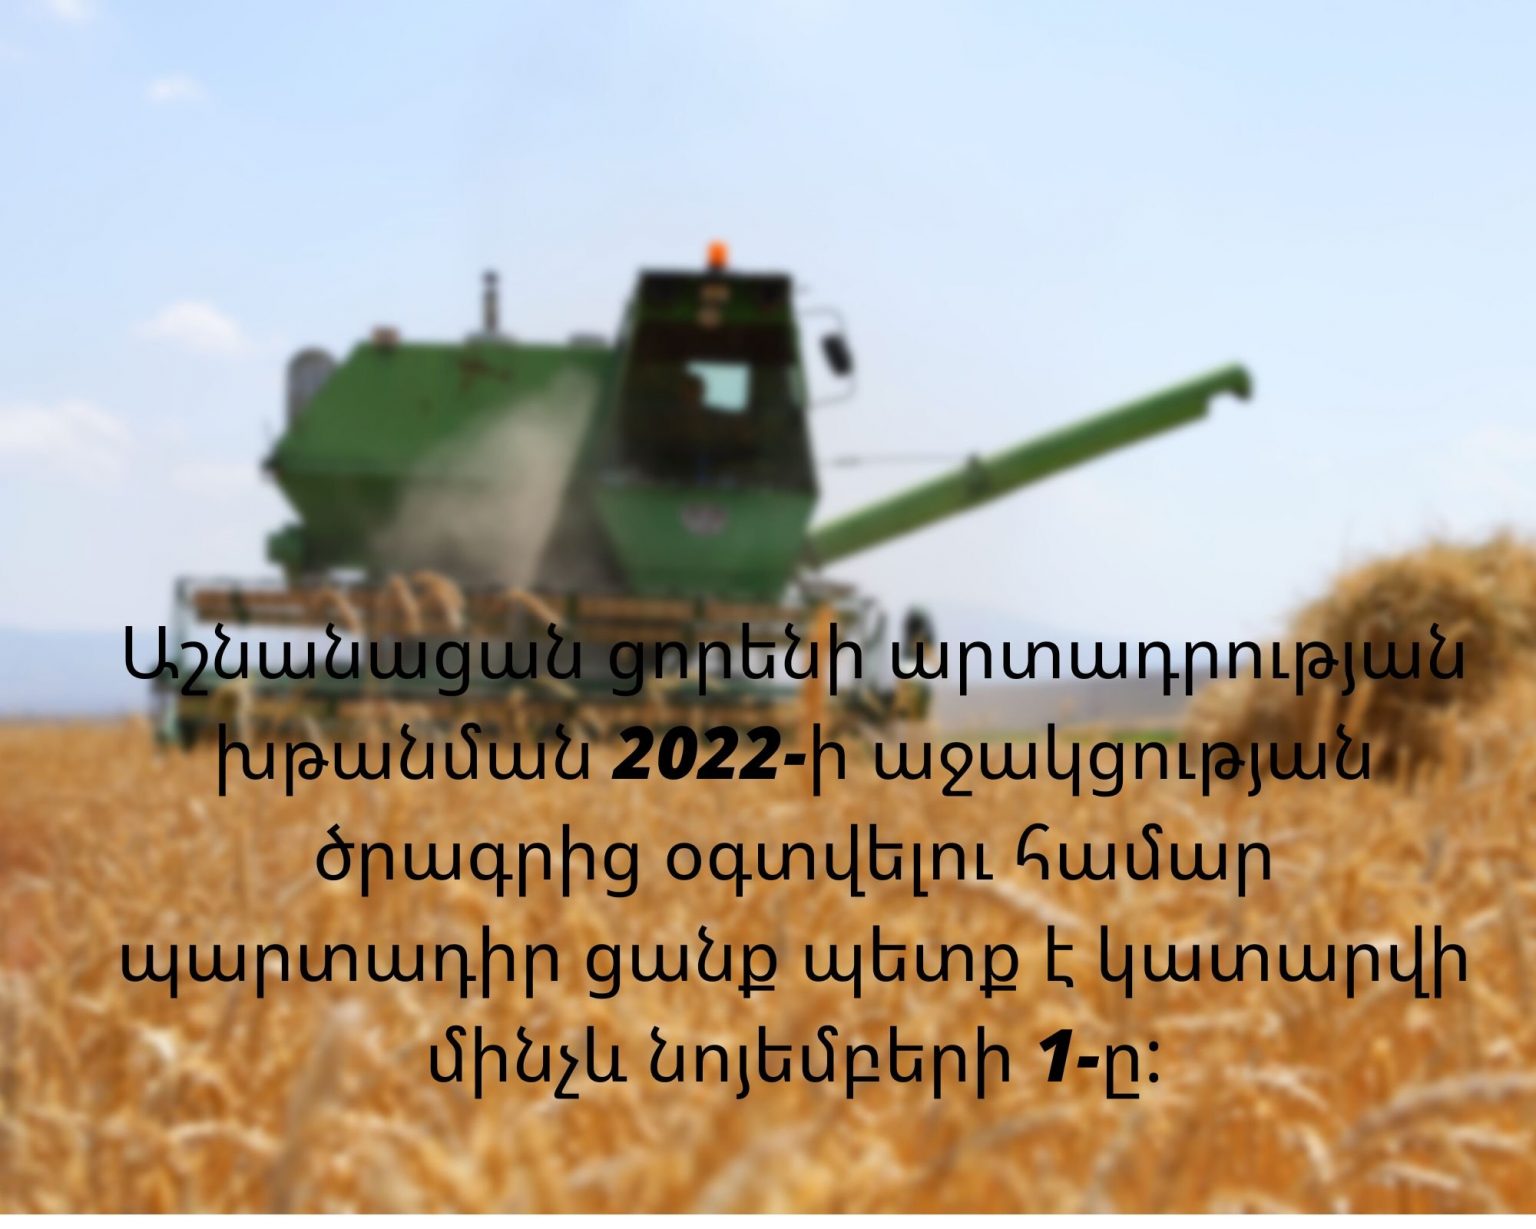 Կառավարությունը հաստատել է աշնանացան ցորենի արտադրության խթանման 2022 թվականի աջակցության ծրագիրը